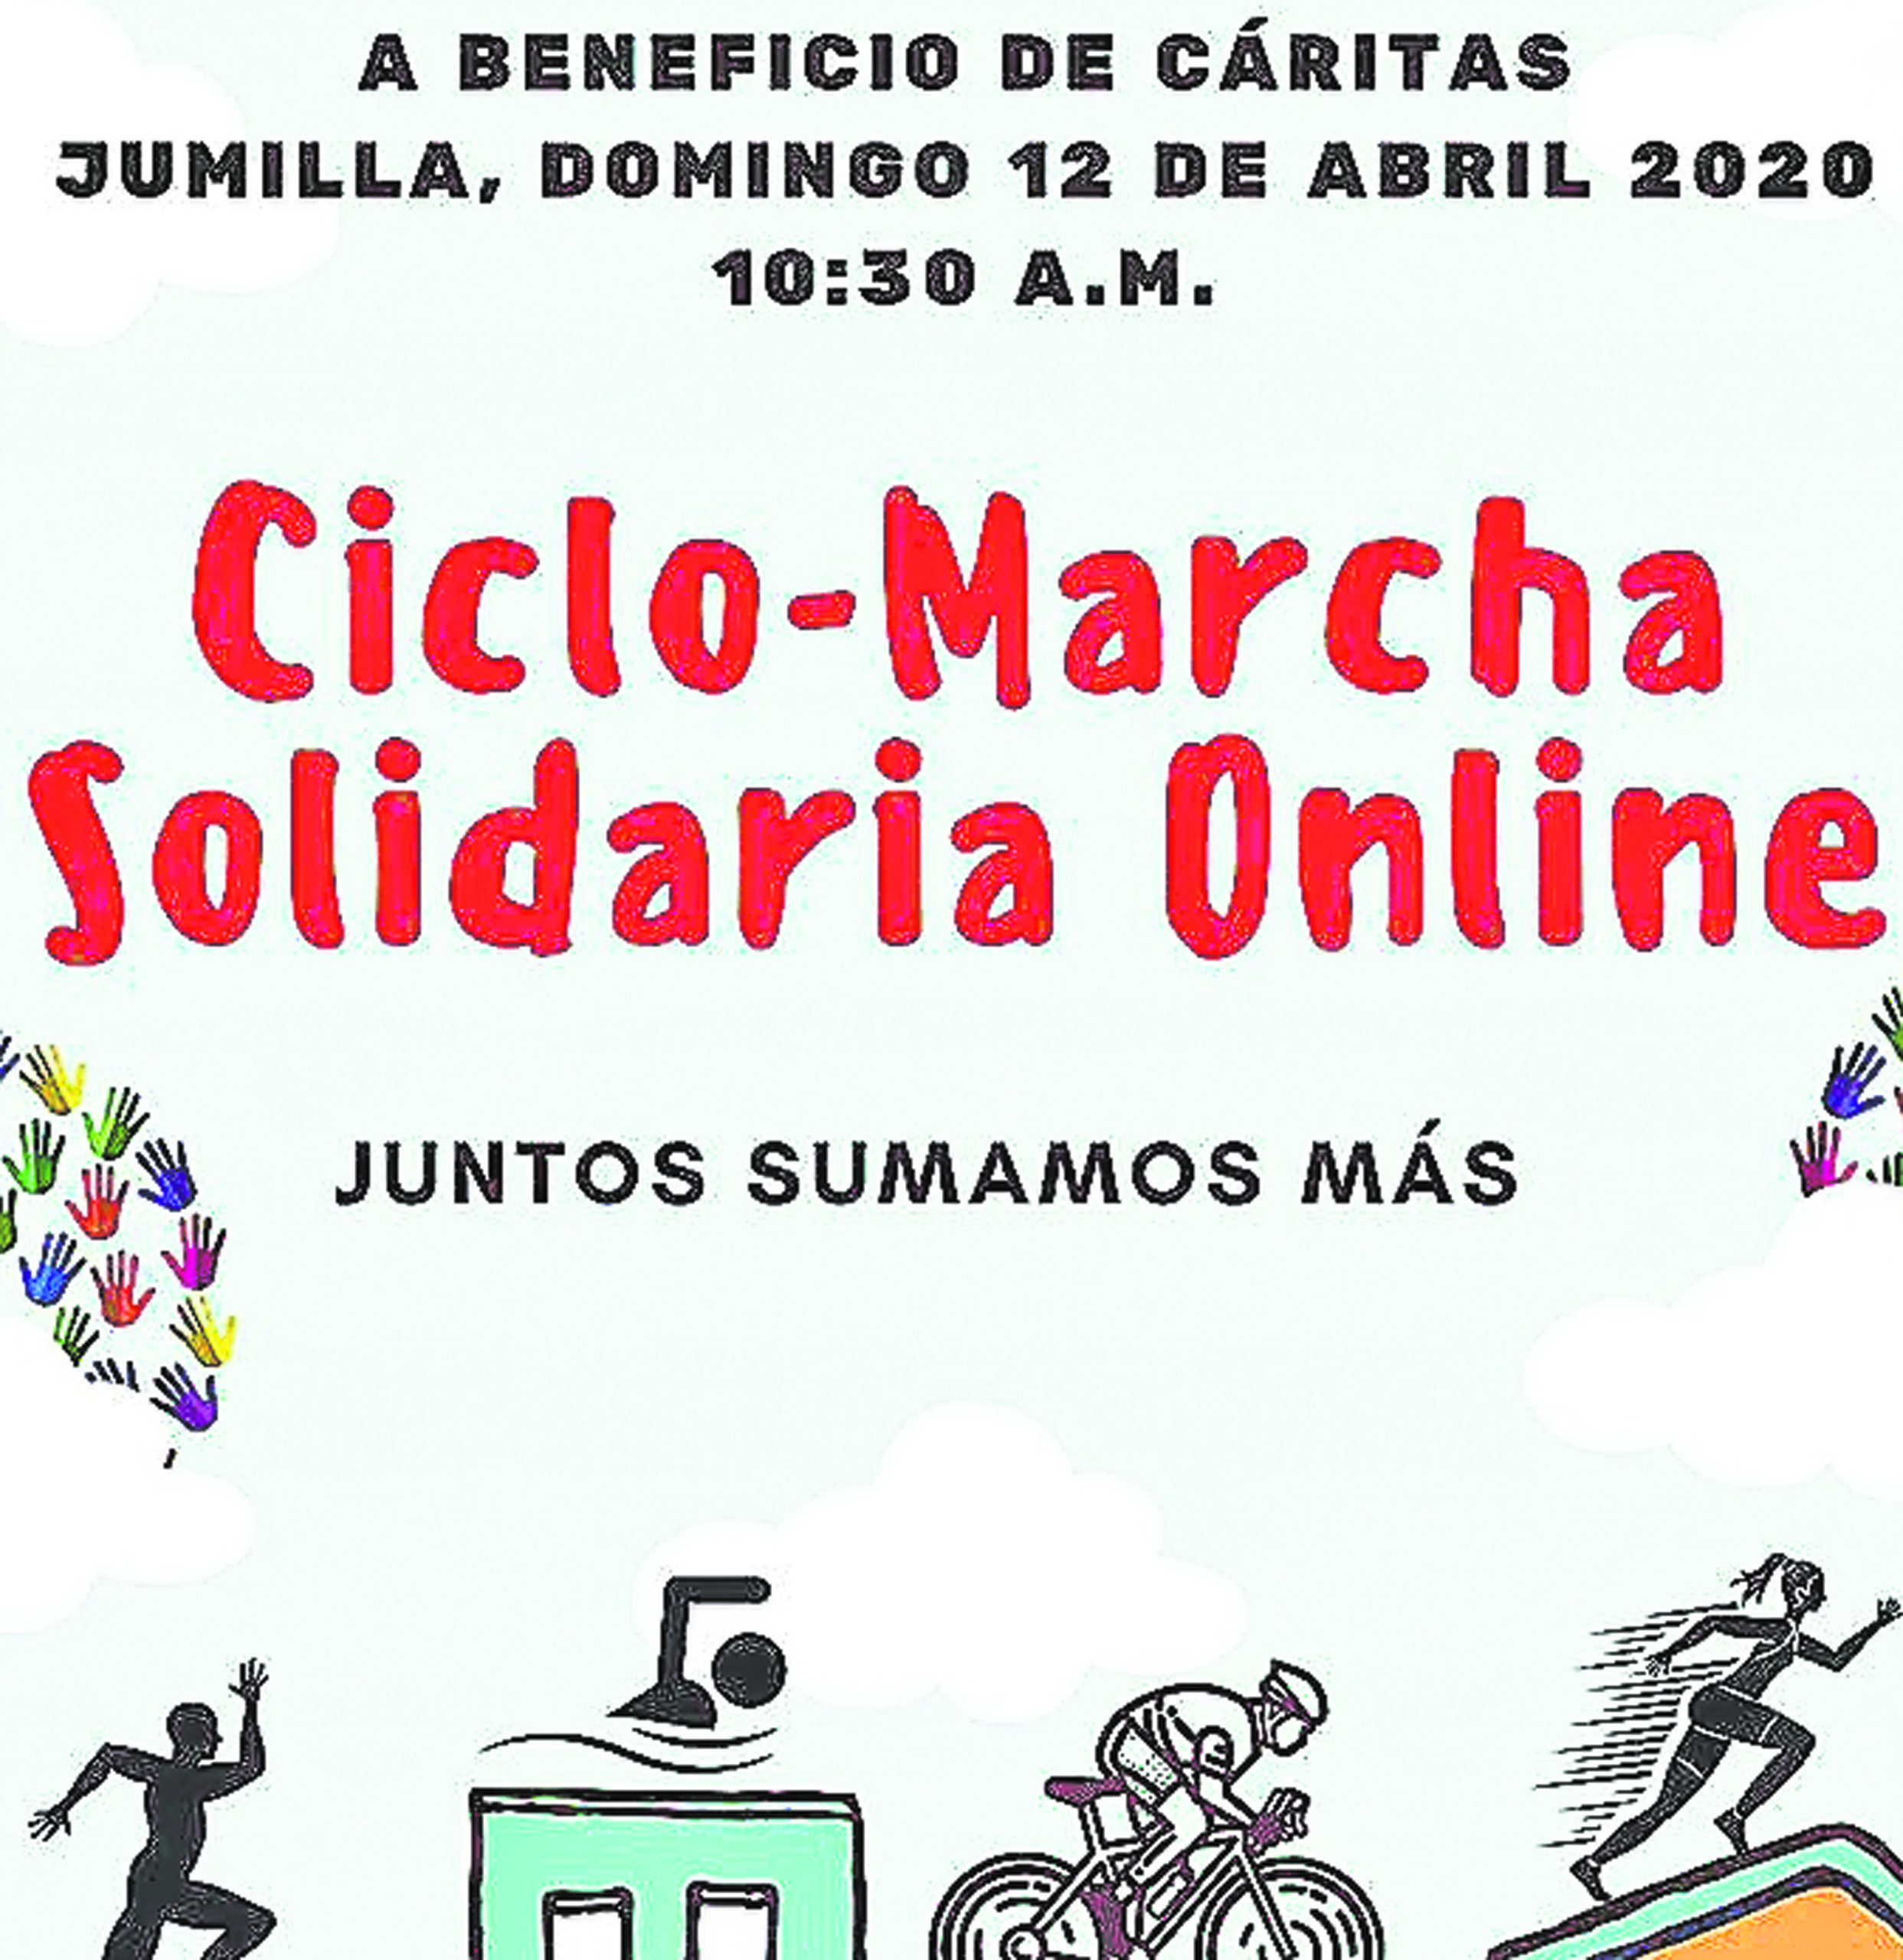 Jesús Montoya anima a todos a inscribirse y colaborar en la ciclo marcha solidaria online de este domingo a beneficio de Caritas